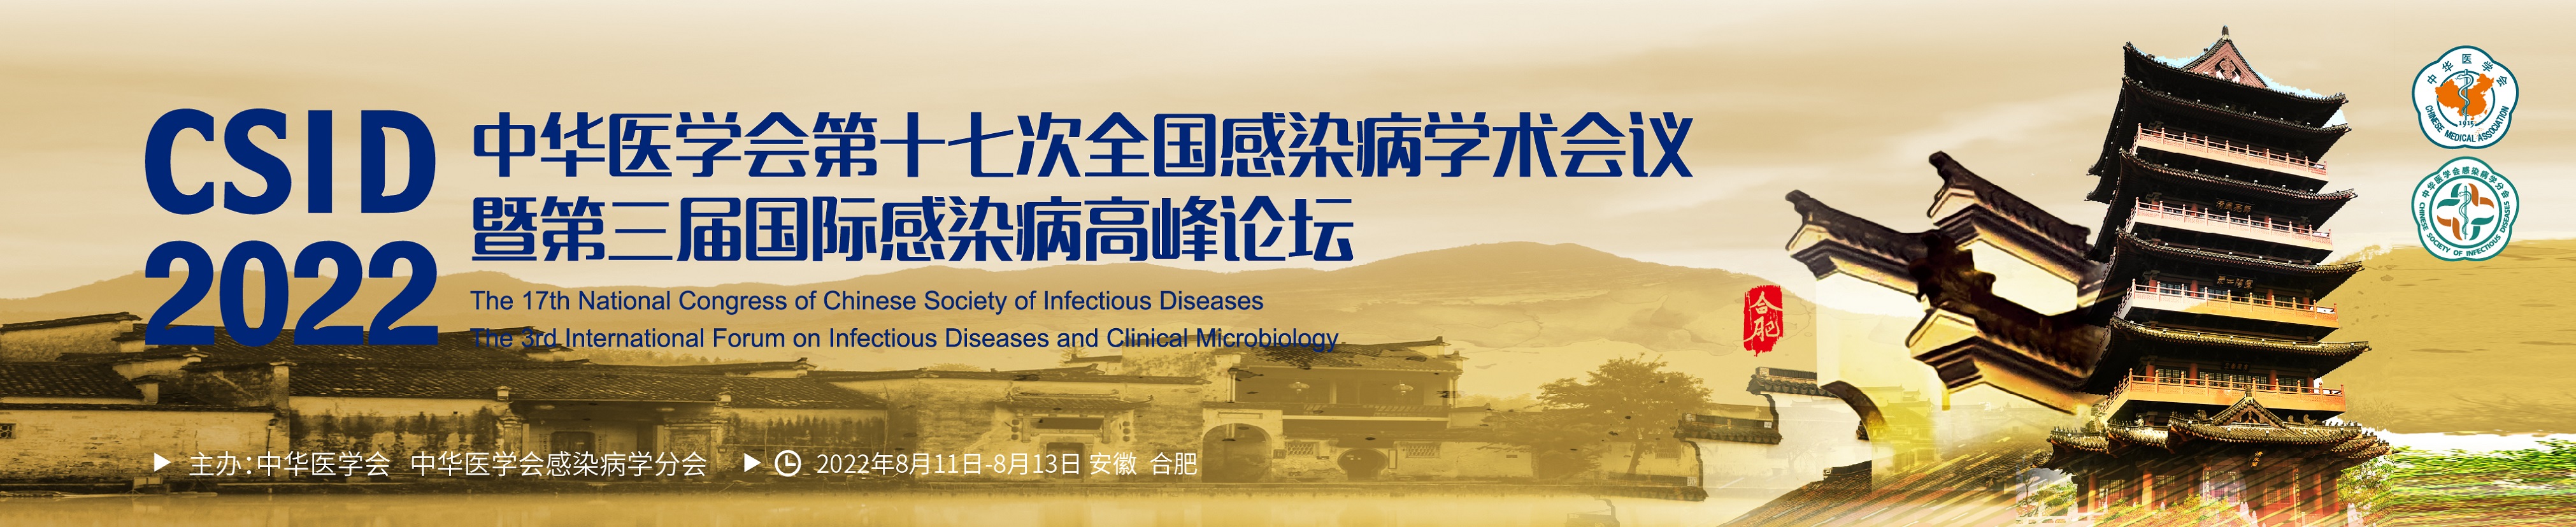 中华医学会第十七次全国感染病学术会议暨第三届国际感染病高峰论坛